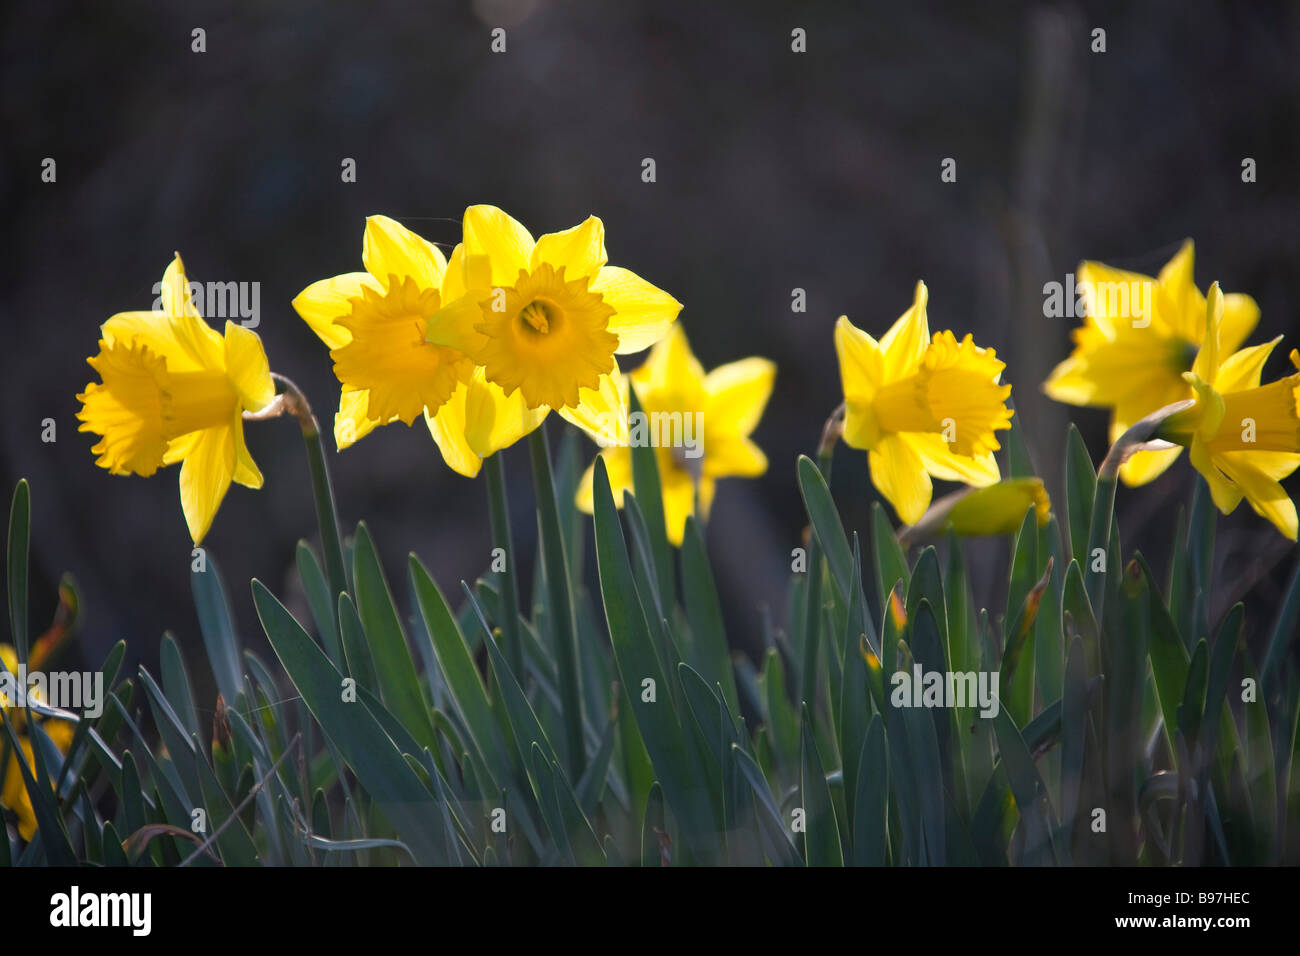 Reihe von Narzisse Blumen Narzissen Kopf am gelben Blütenblätter St Davids Tag Wales Jonquille Narcisse walisische 90349 Daffodil Horizonta Stockfoto